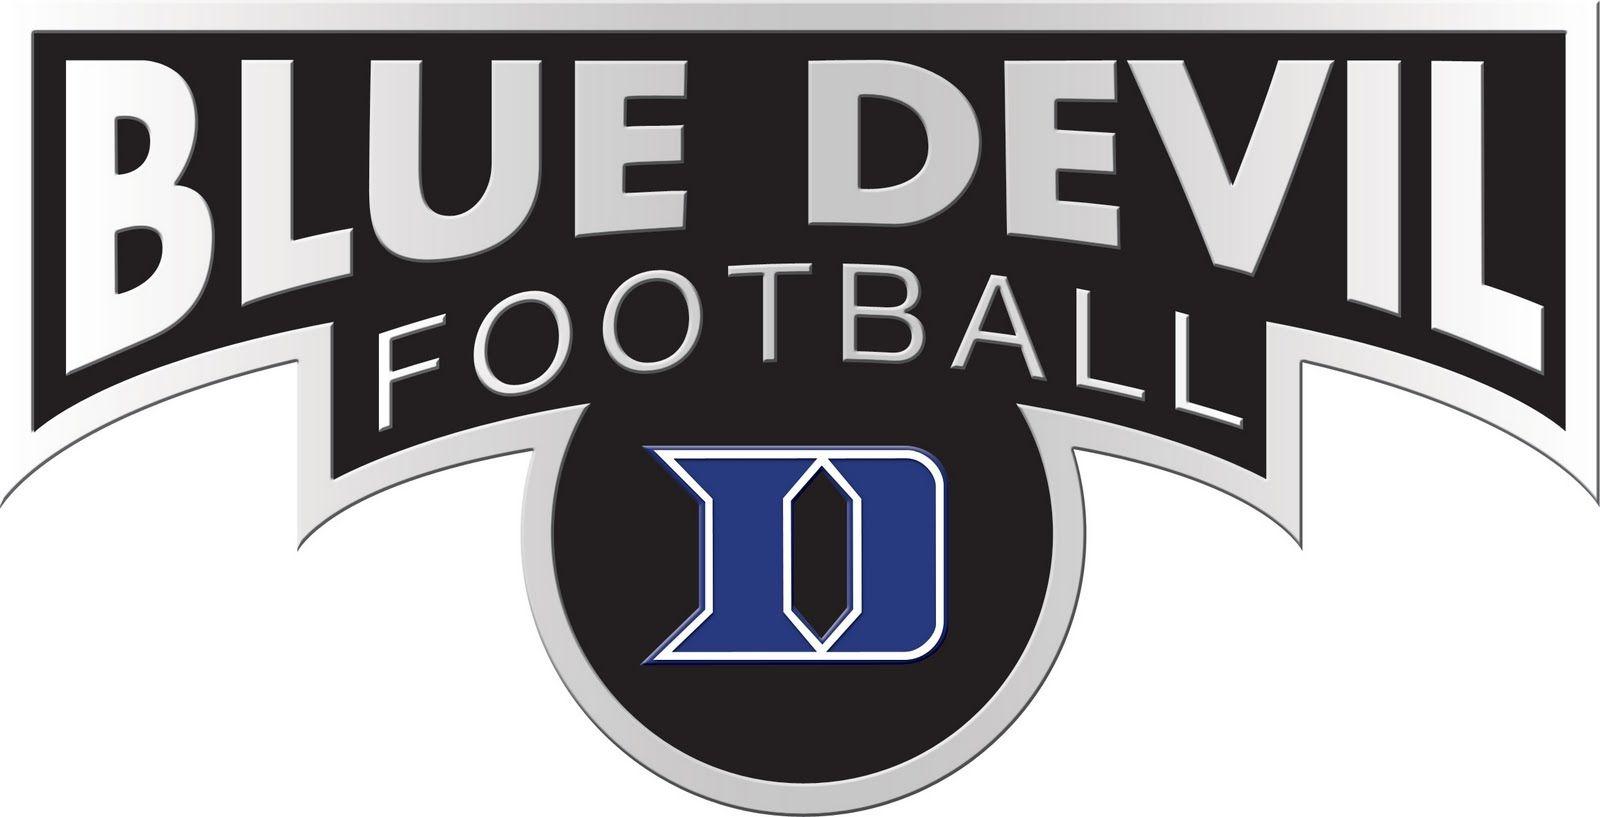 Duke University Football Logo - Duke blue devils football Logos